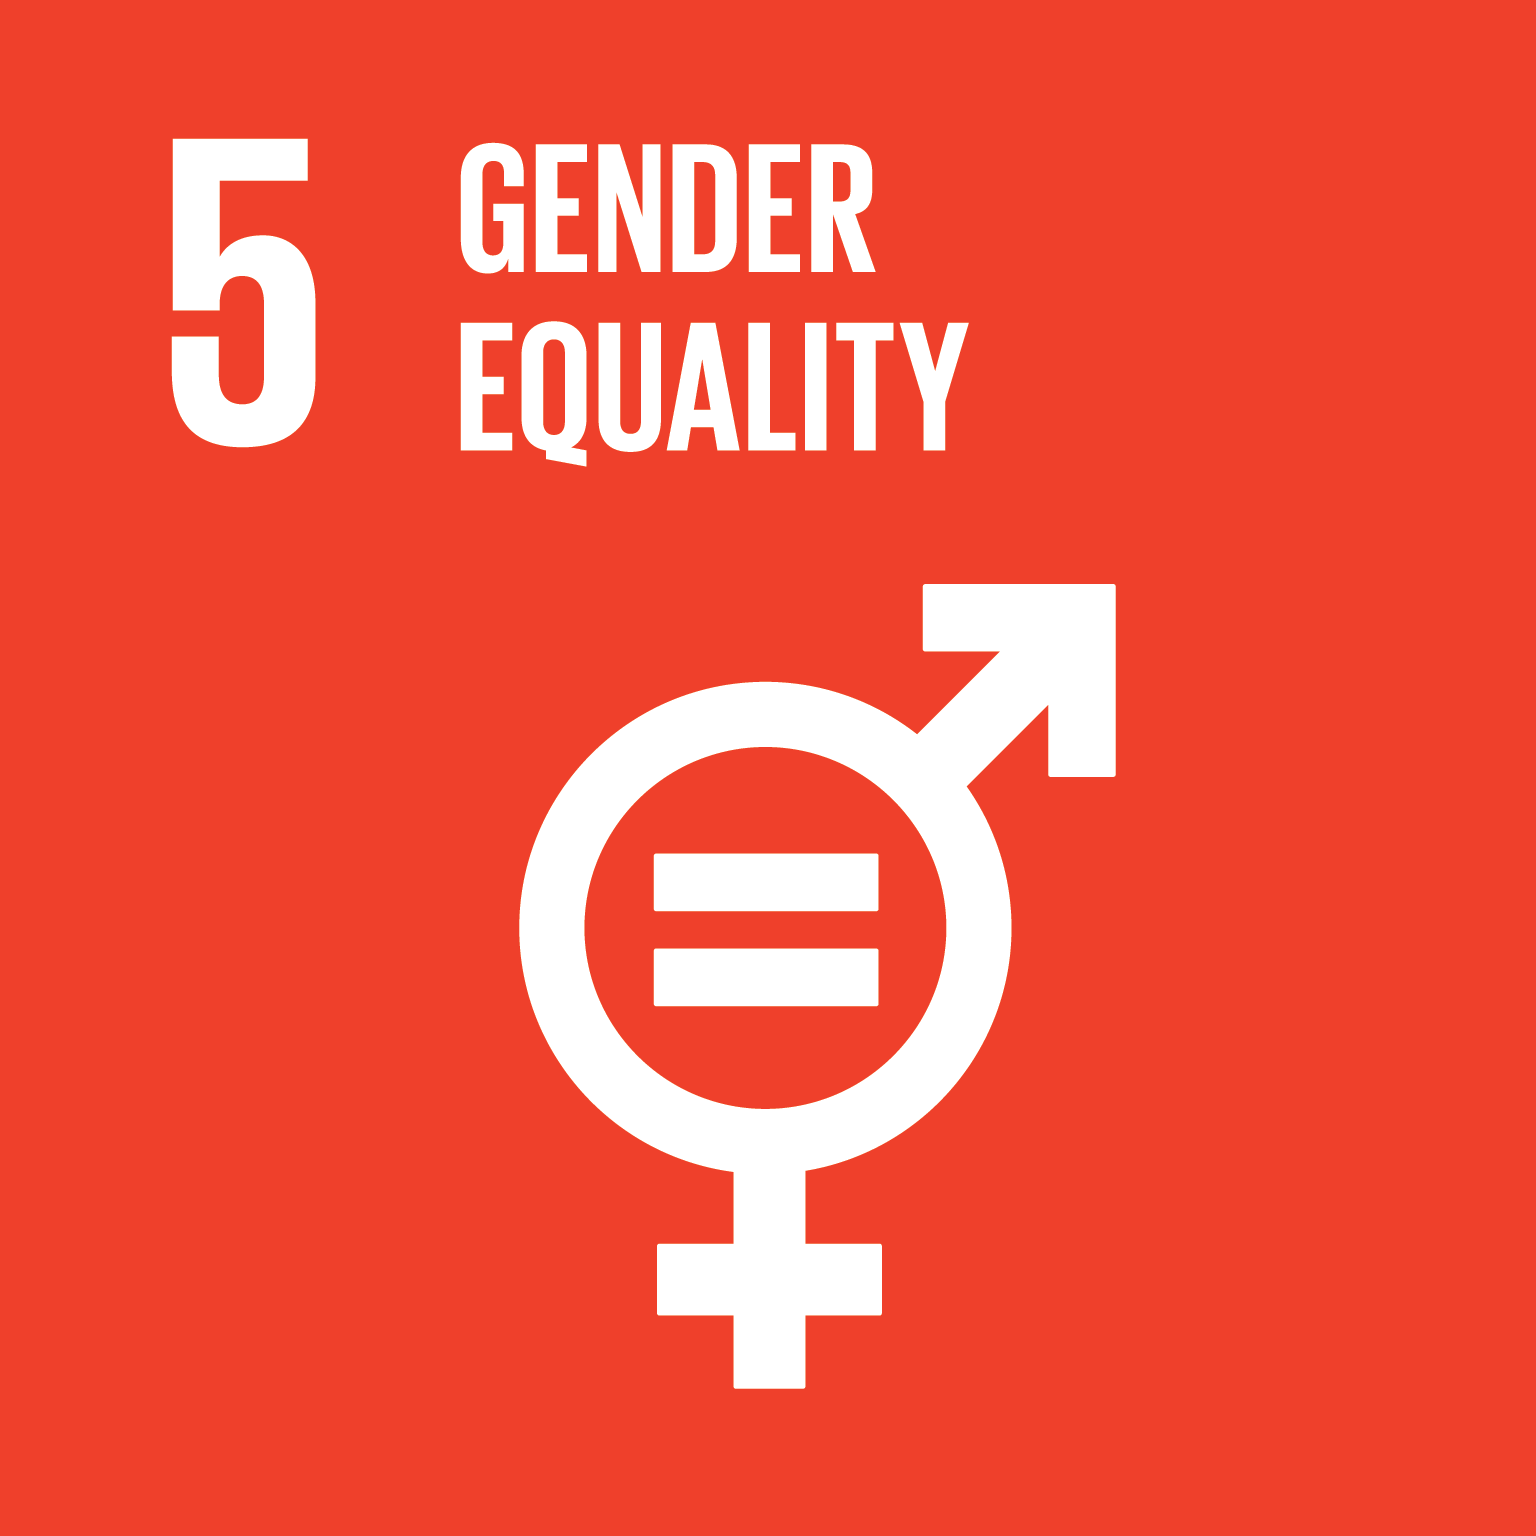 Goal 5 - gender equality